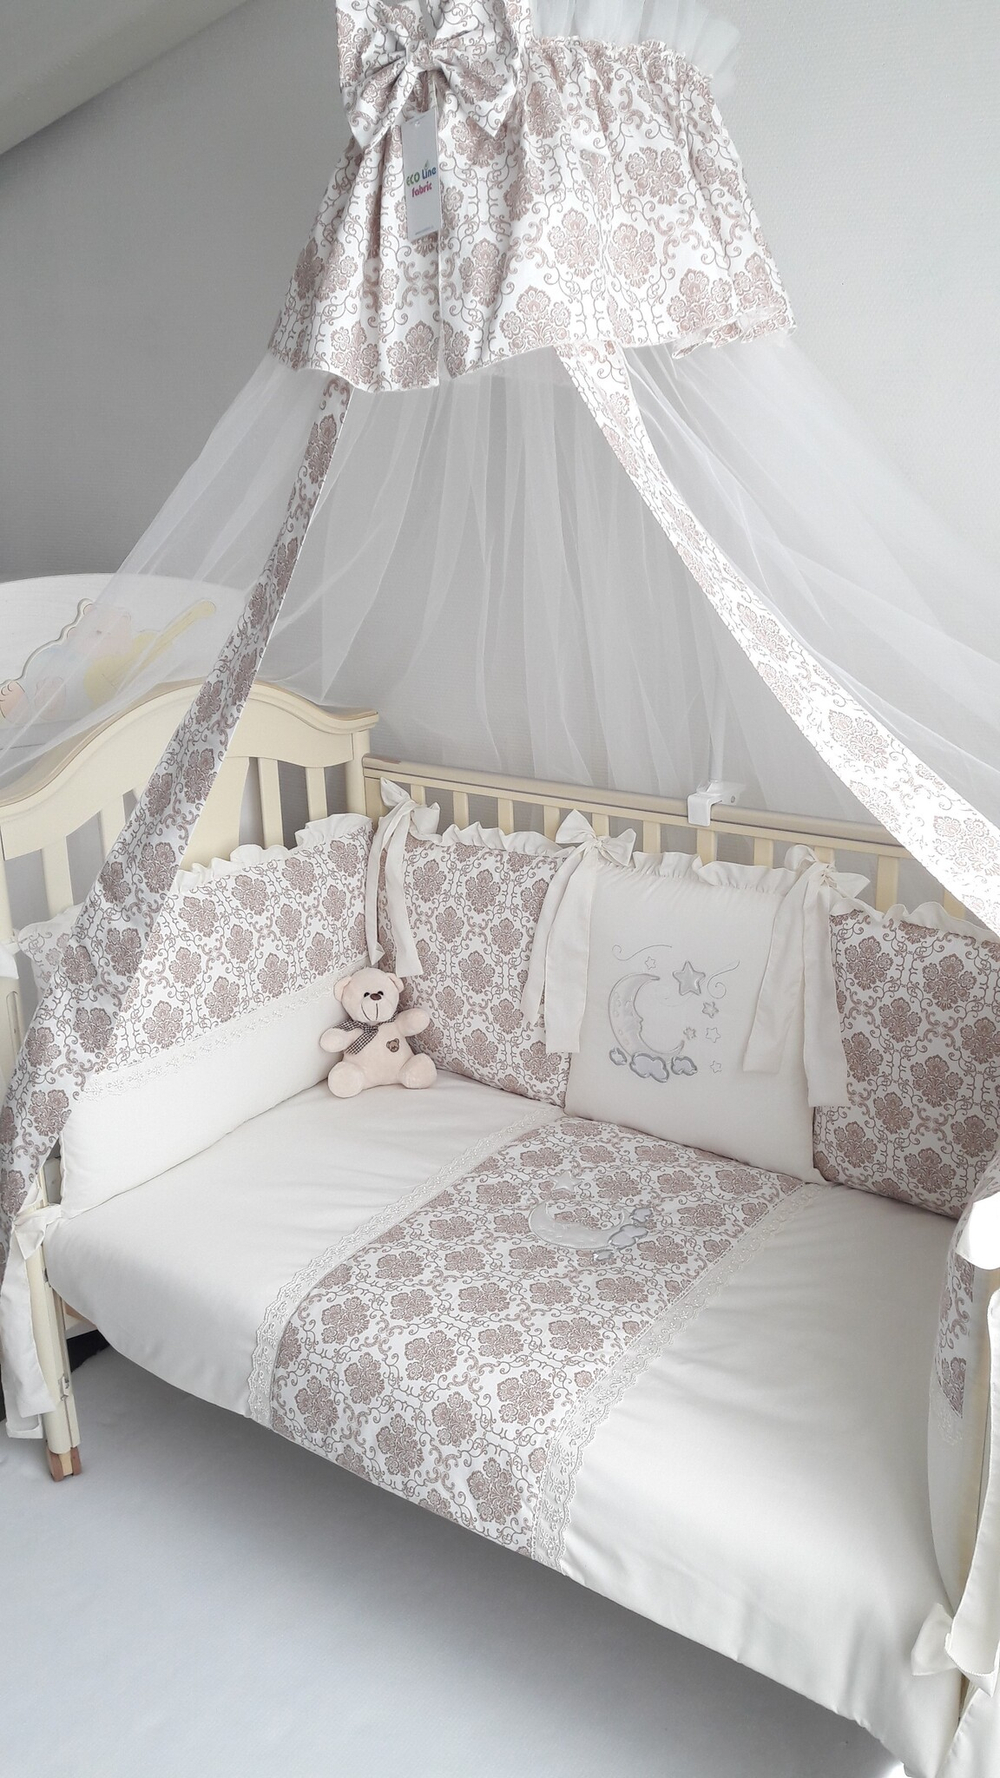 Арт.77759 Набор в кроватку для новорожденных ПАЛЛЕТО (8 подушек)